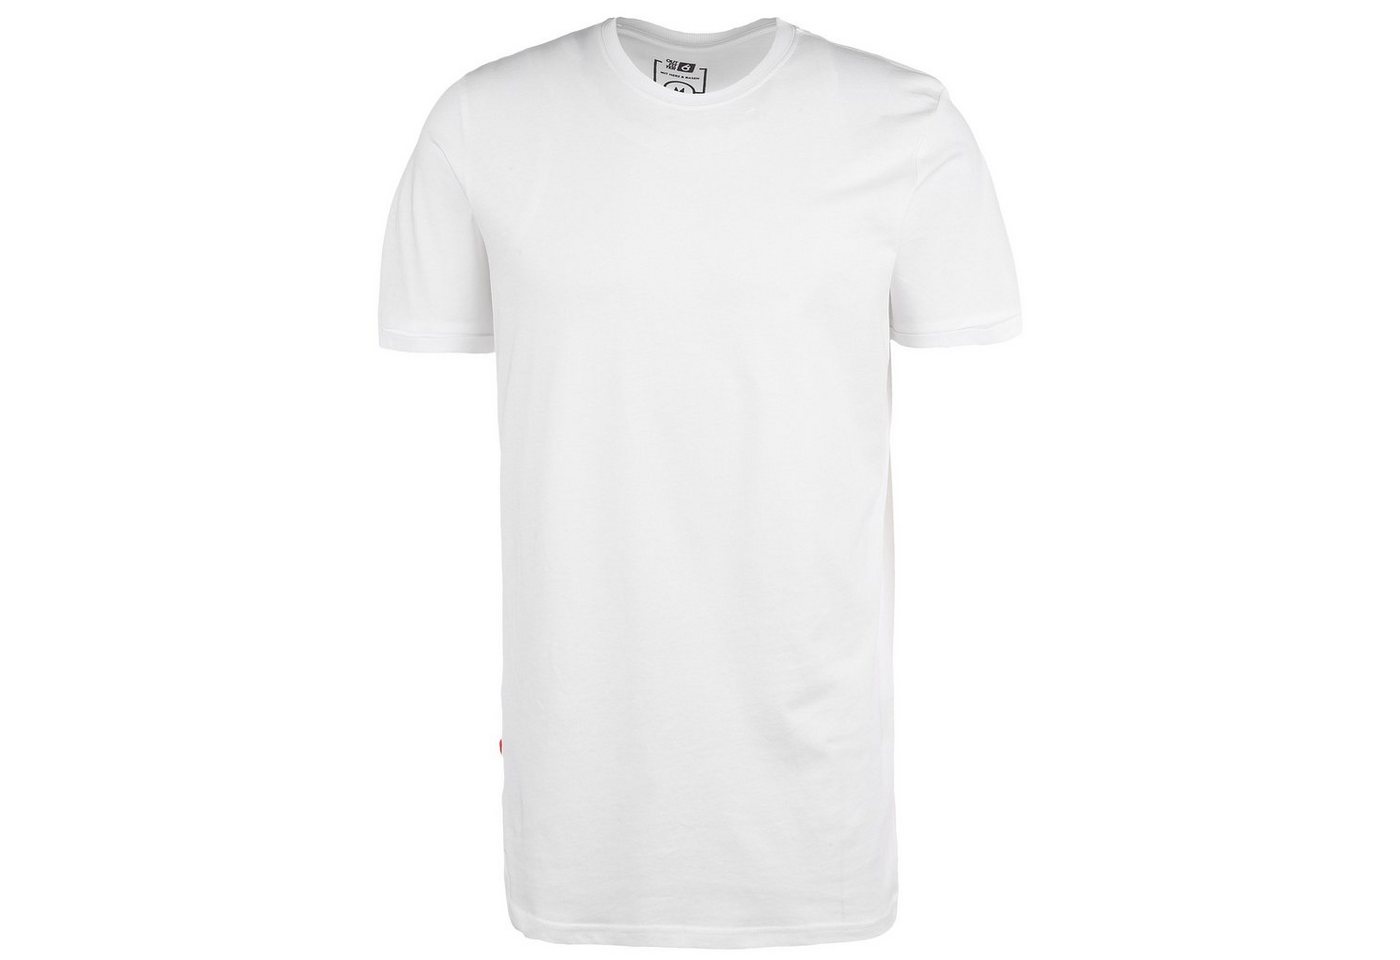 Outfitter T-Shirt Frankfurt Kickt Alles Longcut T-Shirt Herren von Outfitter